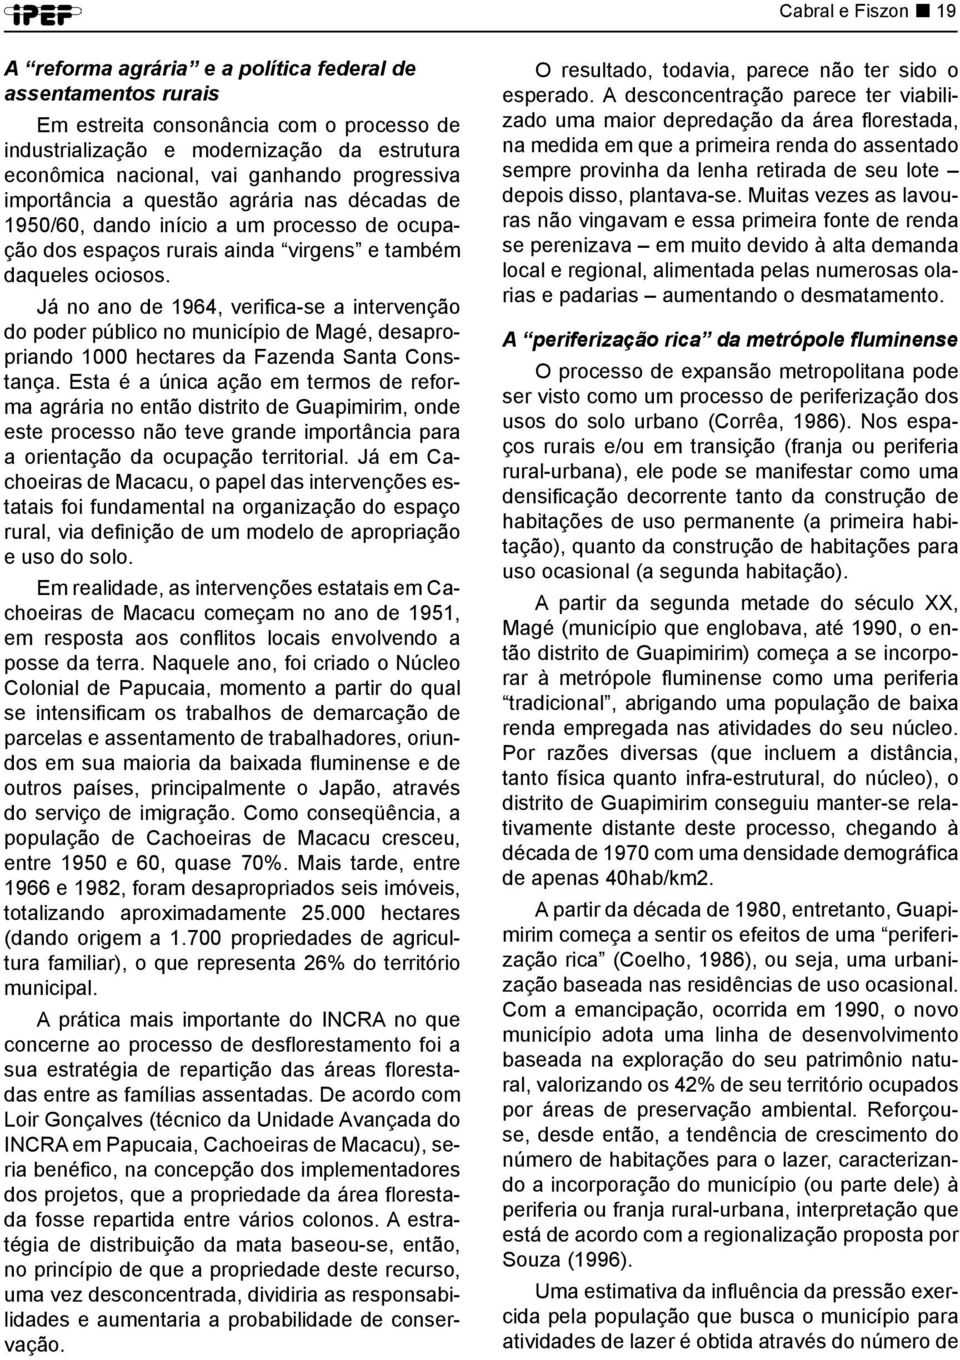 Já no ano de 1964, verifica-se a intervenção do poder público no município de Magé, desapropriando 1000 hectares da Fazenda Santa Constança.